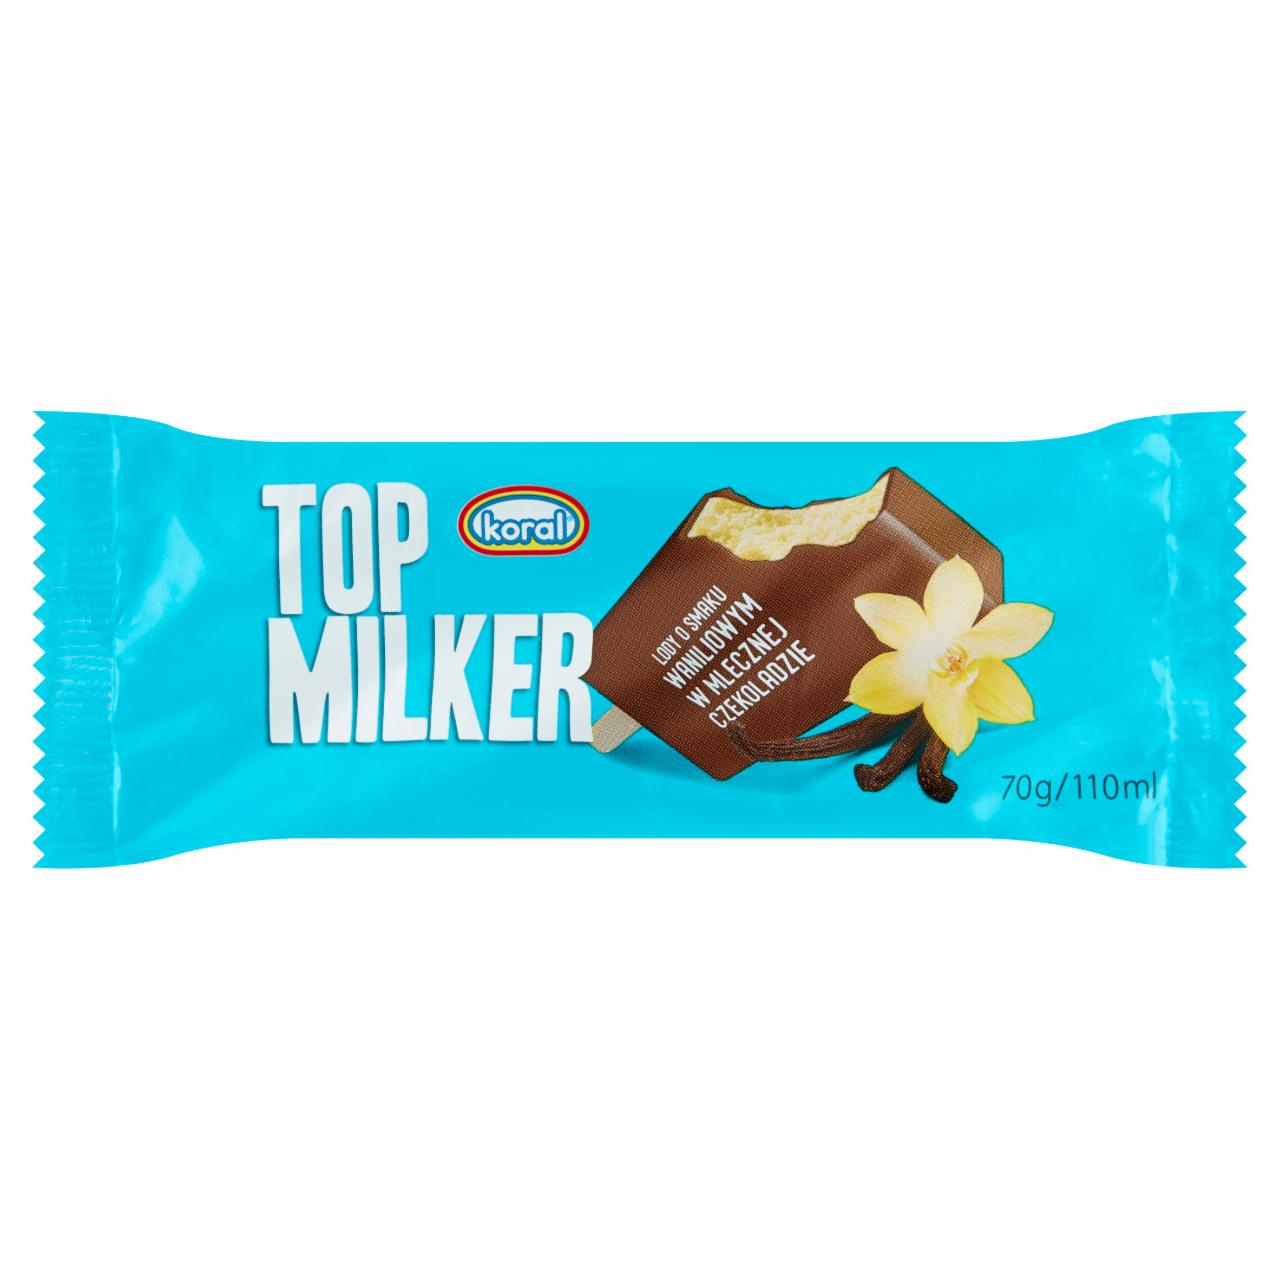 Zdjęcia - Koral Top Milker Lody o smaku waniliowym w mlecznej czekoladzie 110 ml